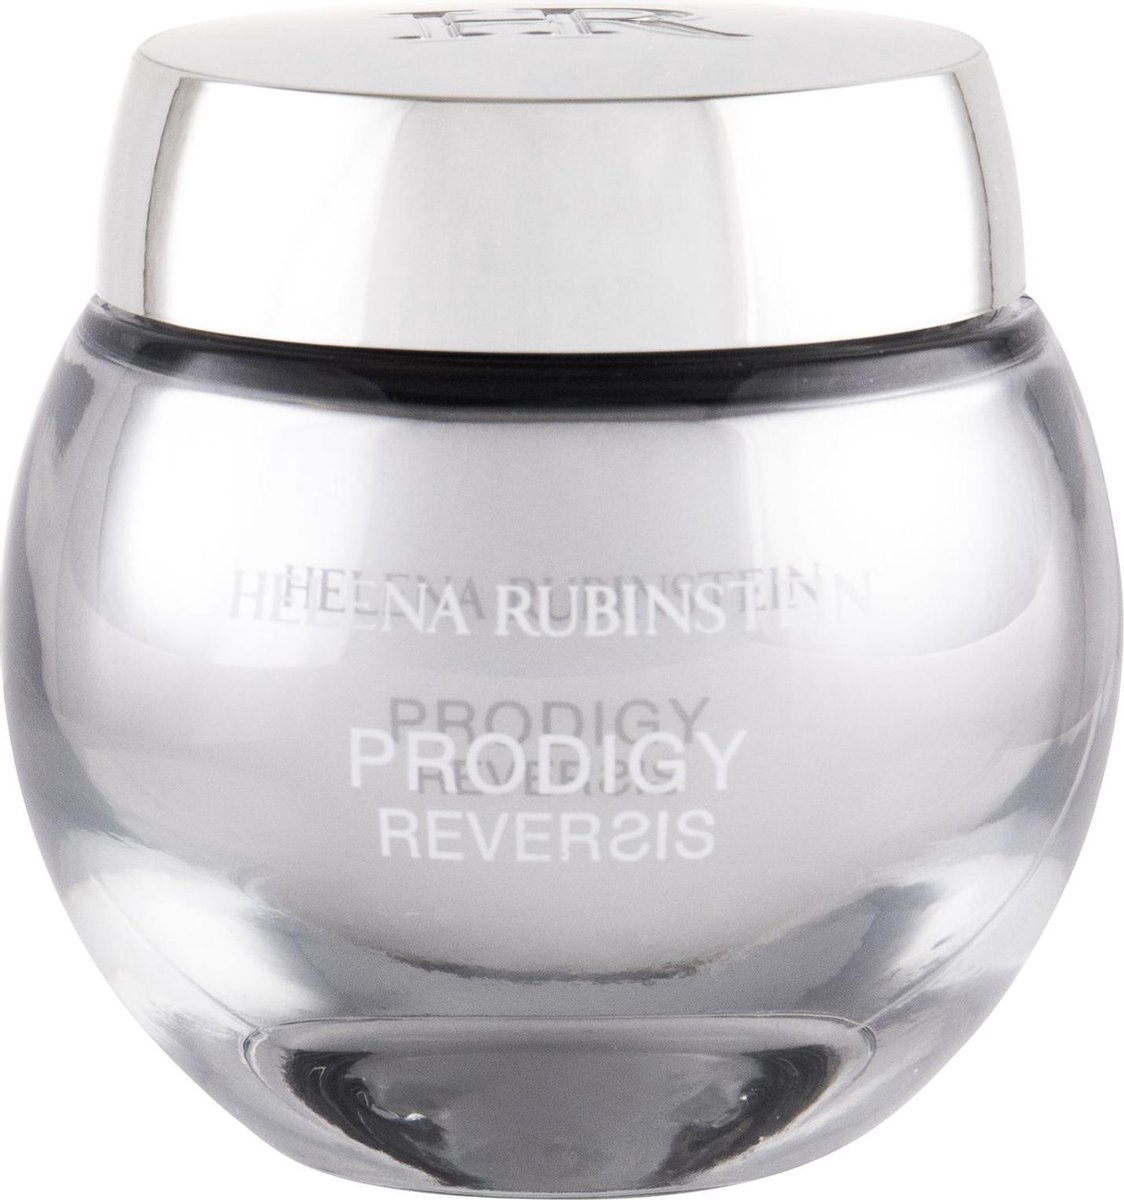 Helena Rubinstein - Prodigy Reversis Cream - Normal Skin 50 ml